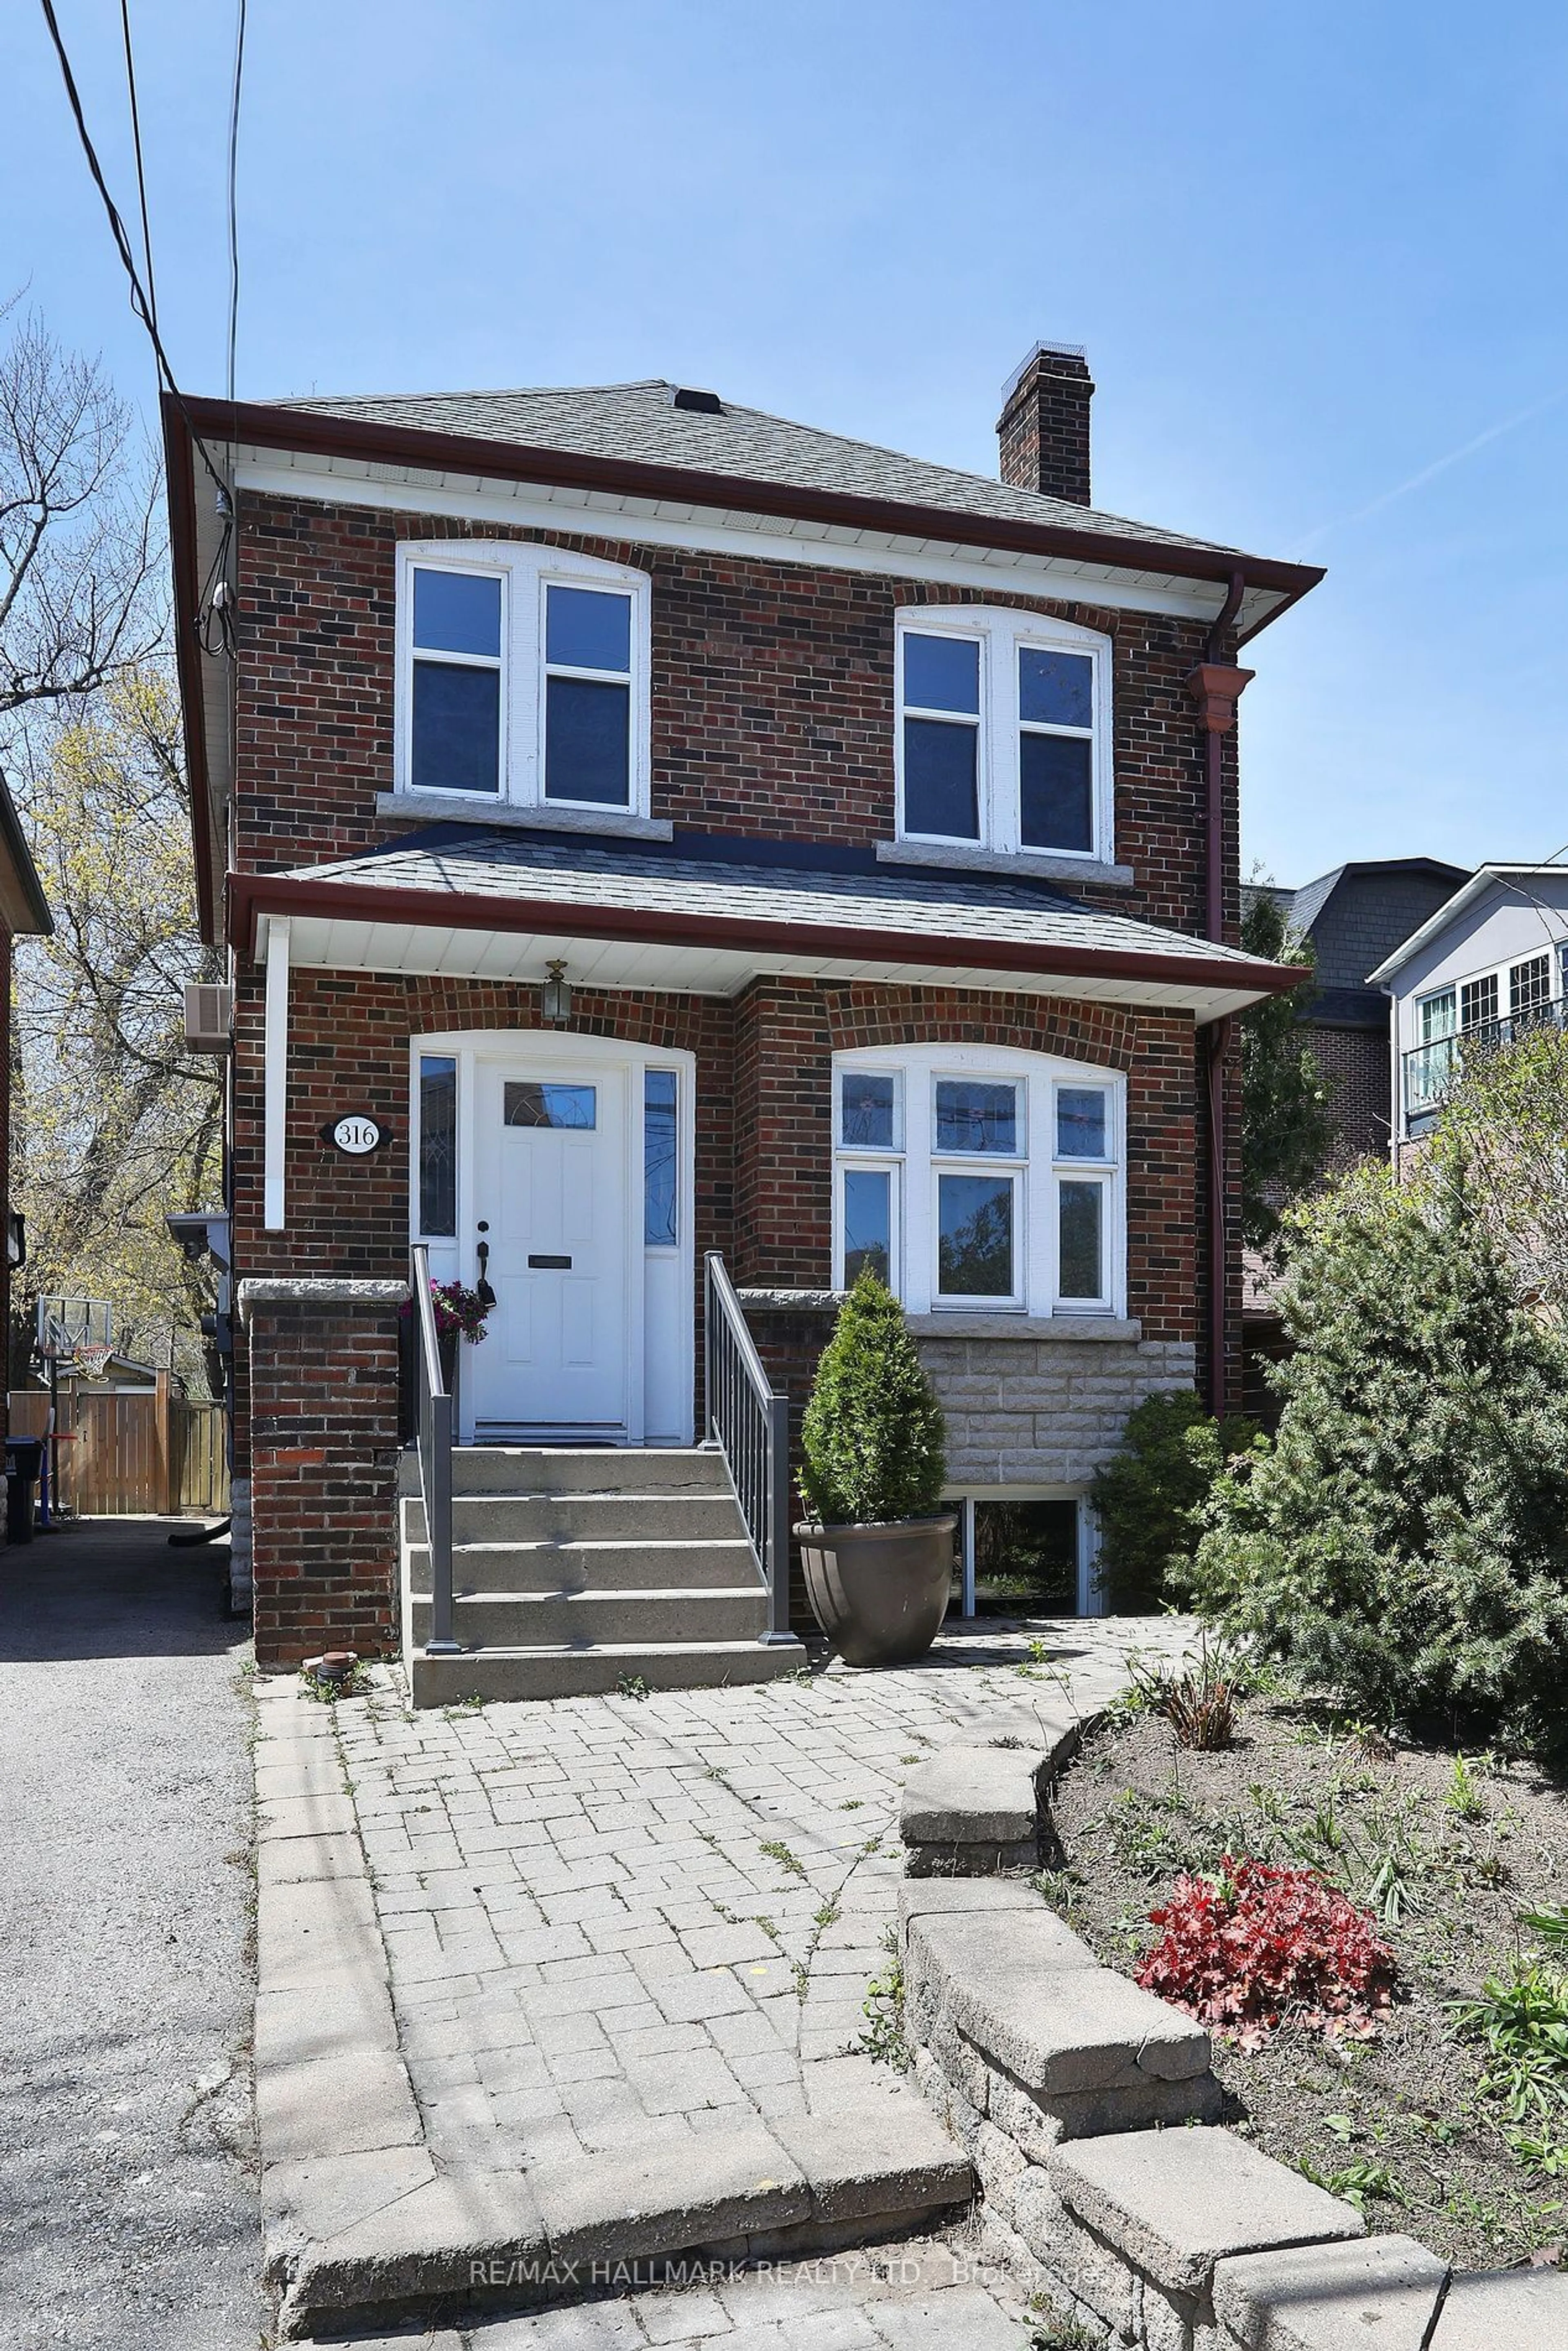 Home with brick exterior material for 316 Jedburgh Rd, Toronto Ontario M5M 3K8